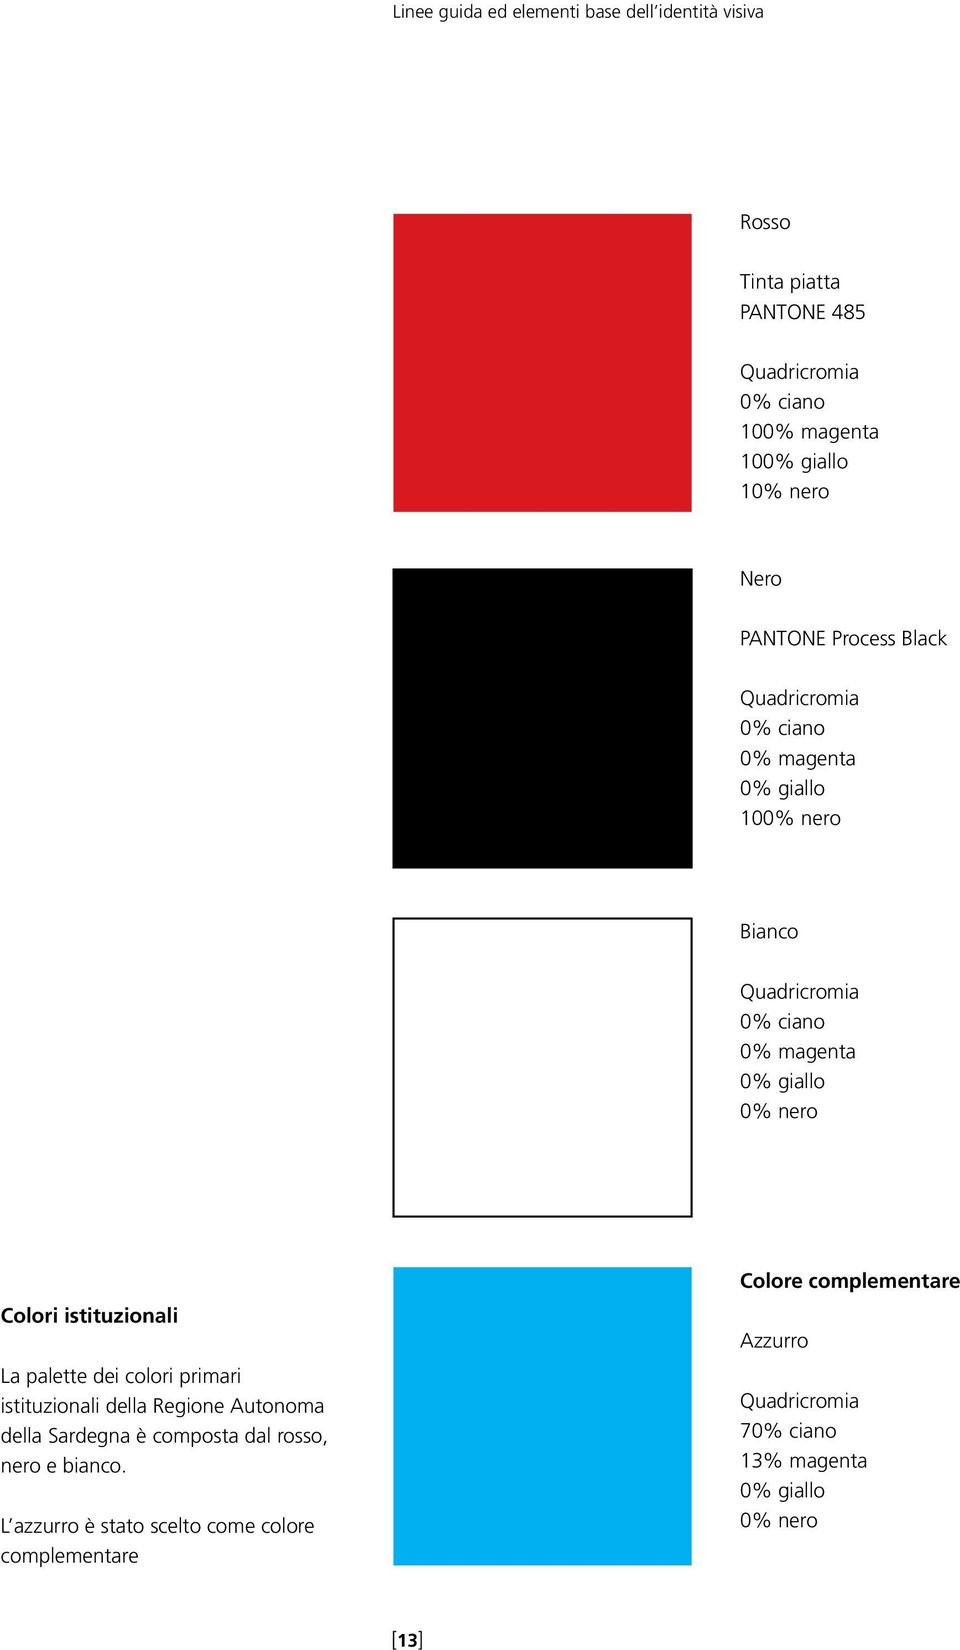 Colori istituzionali La palette dei colori primari istituzionali della Regione Autonoma della Sardegna è composta dal rosso, nero e